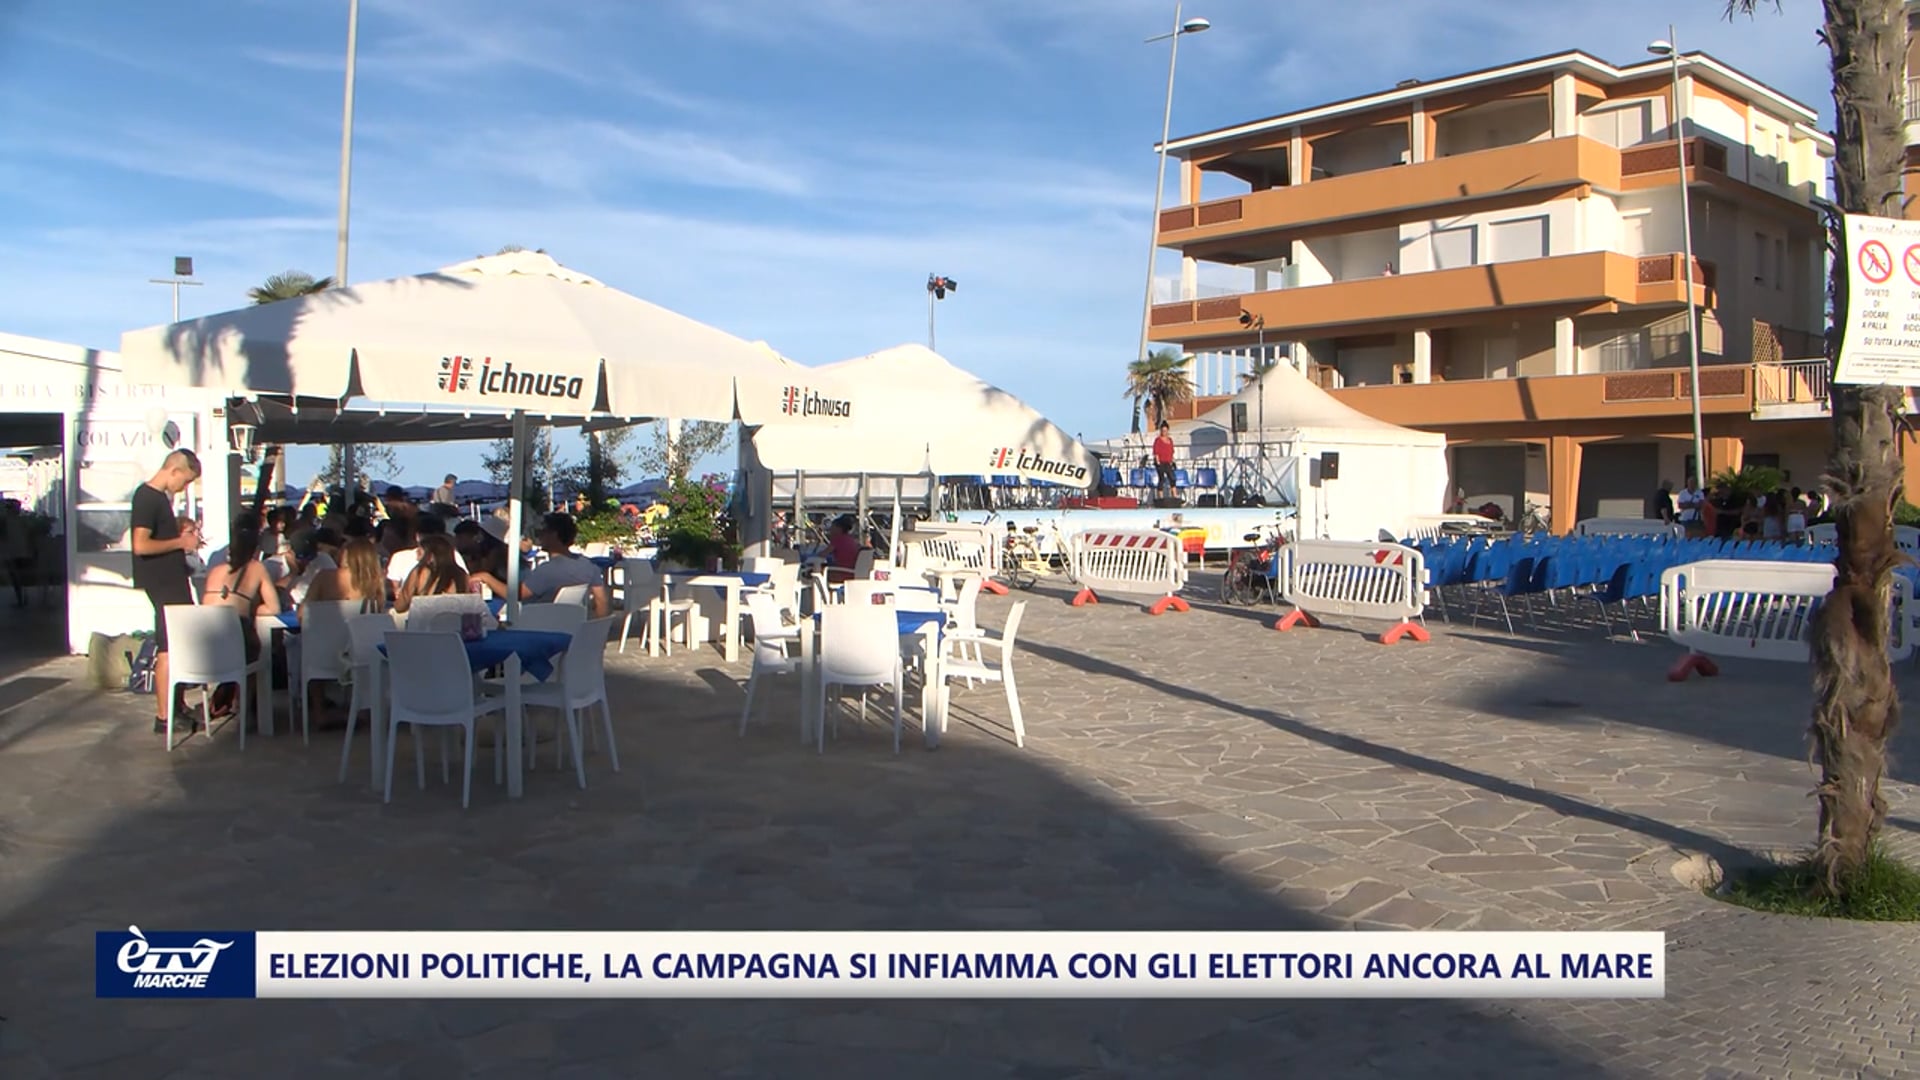 La campagna elettorale sotto l'ombrellone, parola agli elettori (ancora in parte vacanzieri) - VIDEO 